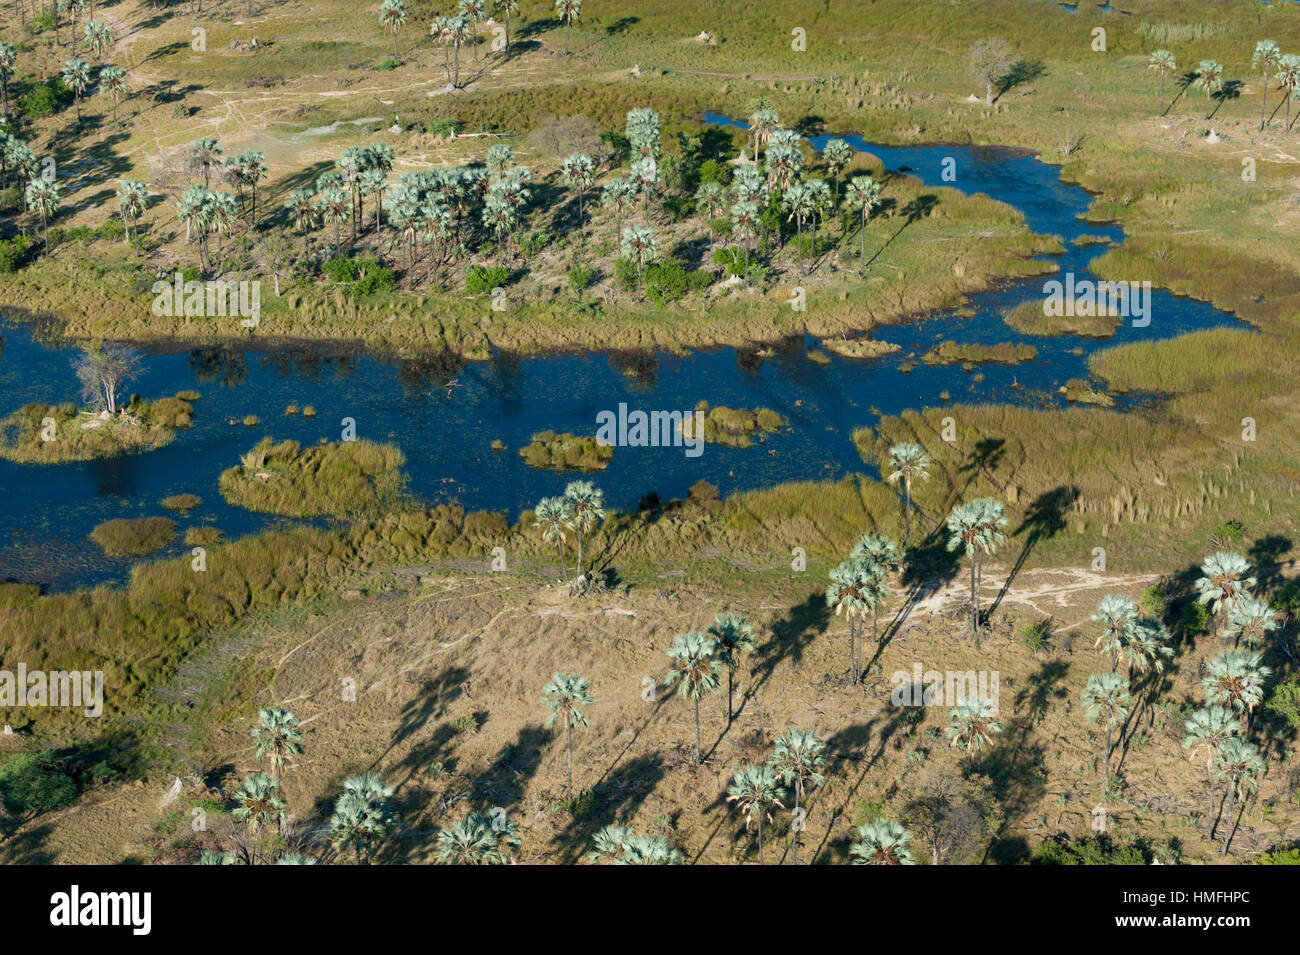 Vista aérea del Delta del Okavango, Botswana Foto de stock